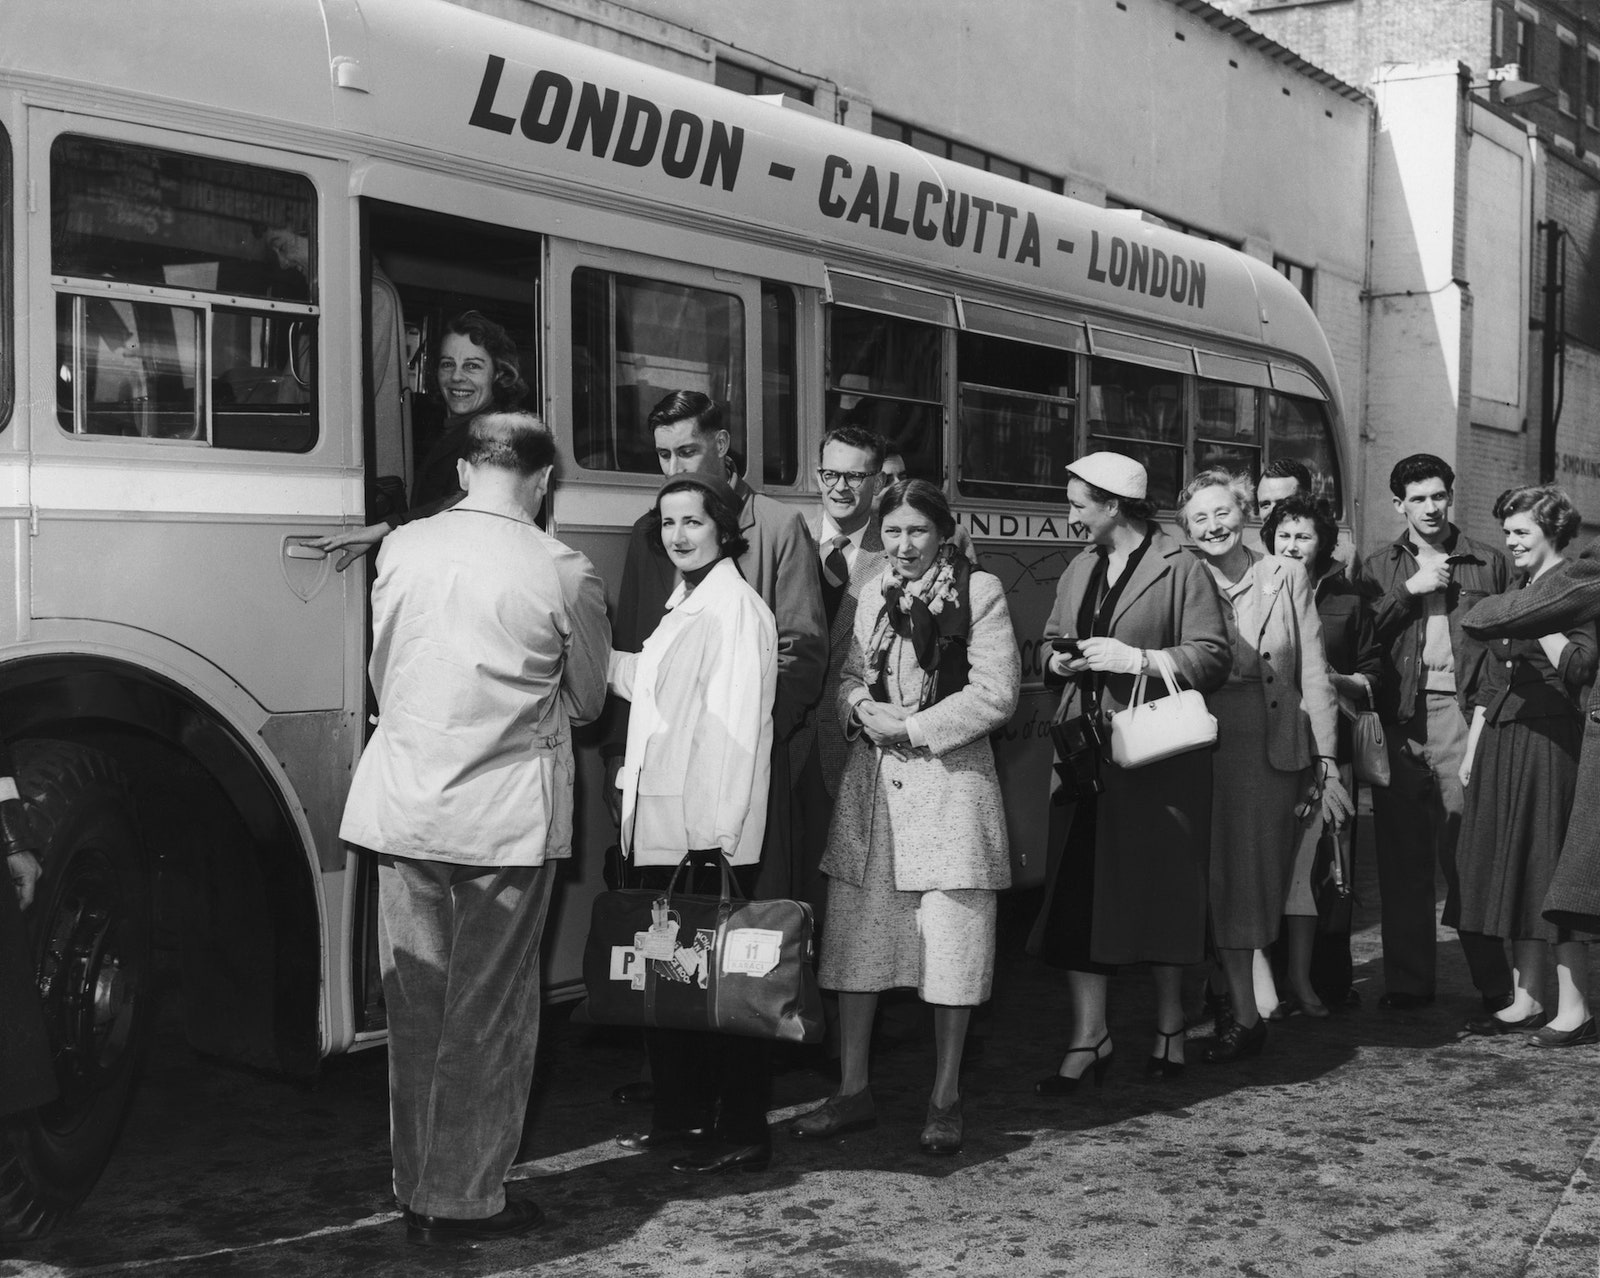  Компания «Albert Tours» предлагала автобусный тур Лондон — Калькутта за 145 фунтов стерлингов, включая питание. Этот автобусный маршрут из Лондона в Калькутту считается самым длинным в мире - фото 1